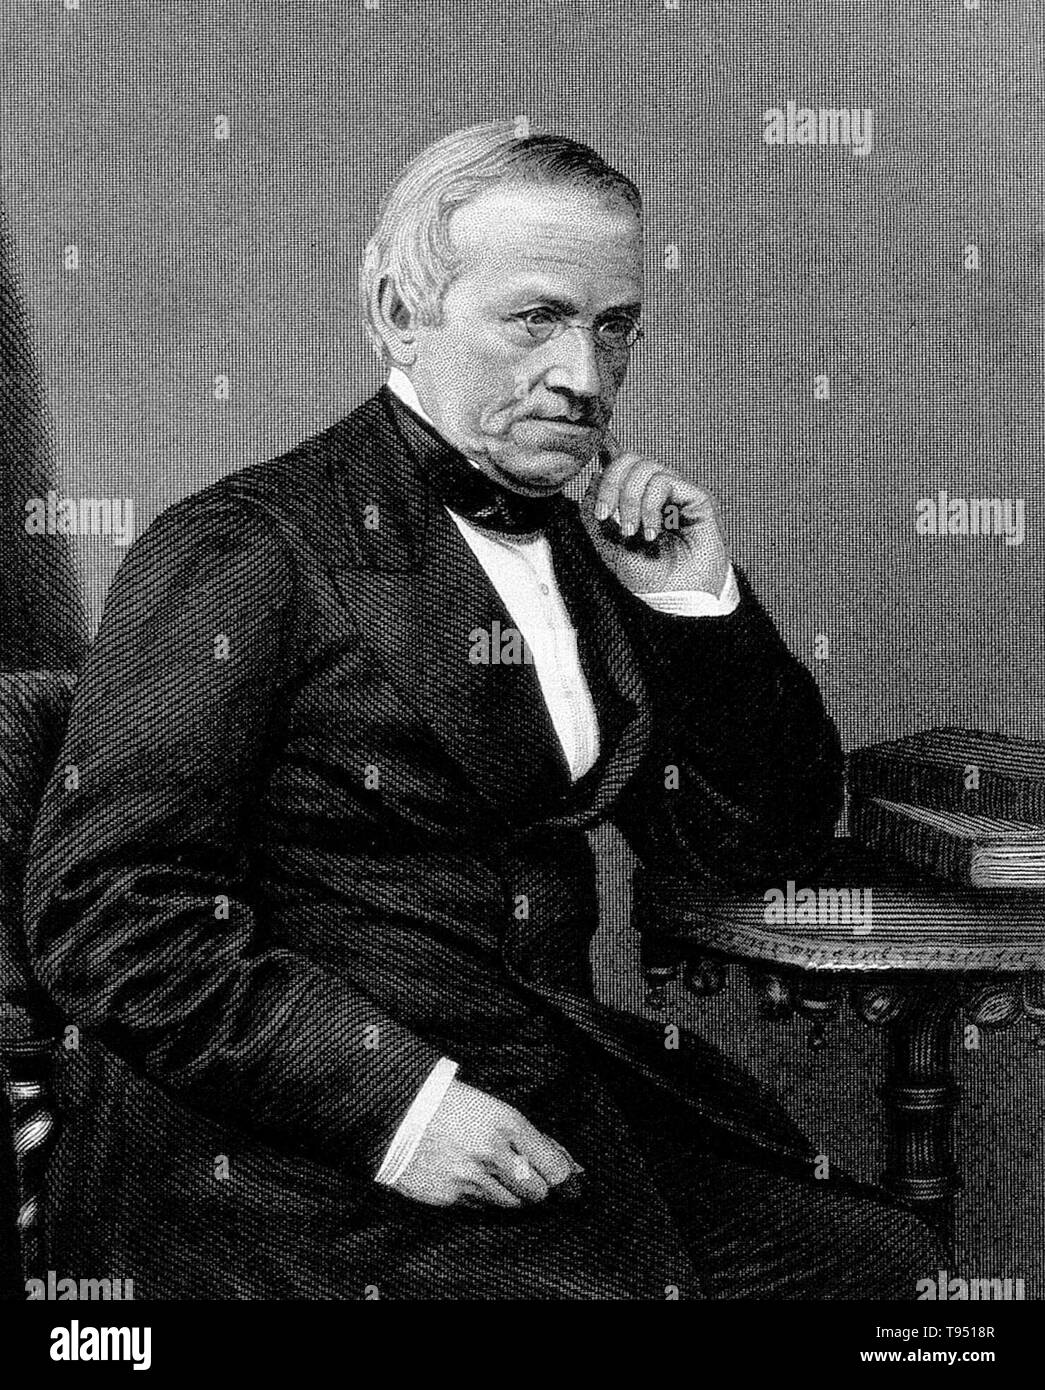 Sir Charles Wheatstone'schen. Kupferstich von W. H. Mote, 1867. Charles Wheatstone (1802-1875) war ein englischer Wissenschaftler und Erfinder vieler wissenschaftlicher Durchbrüche der viktorianischen Ära, einschließlich der Englischen Concertina, das stereoskop (ein Gerät für die Darstellung von dreidimensionalen Aufnahmen) und der Playfair Chiffre (eine Verschlüsselung Technik). Aber Wheatstone ist am besten für seine Beiträge in der Entwicklung der Wheatstone-brücke bekannt, die ursprünglich von Samuel Hunter Christie, die verwendet wird, um eine unbekannte elektrische Widerstand zu messen erfunden, und als wichtige Figur in der Entwicklung der Telegrafie. Stockfoto